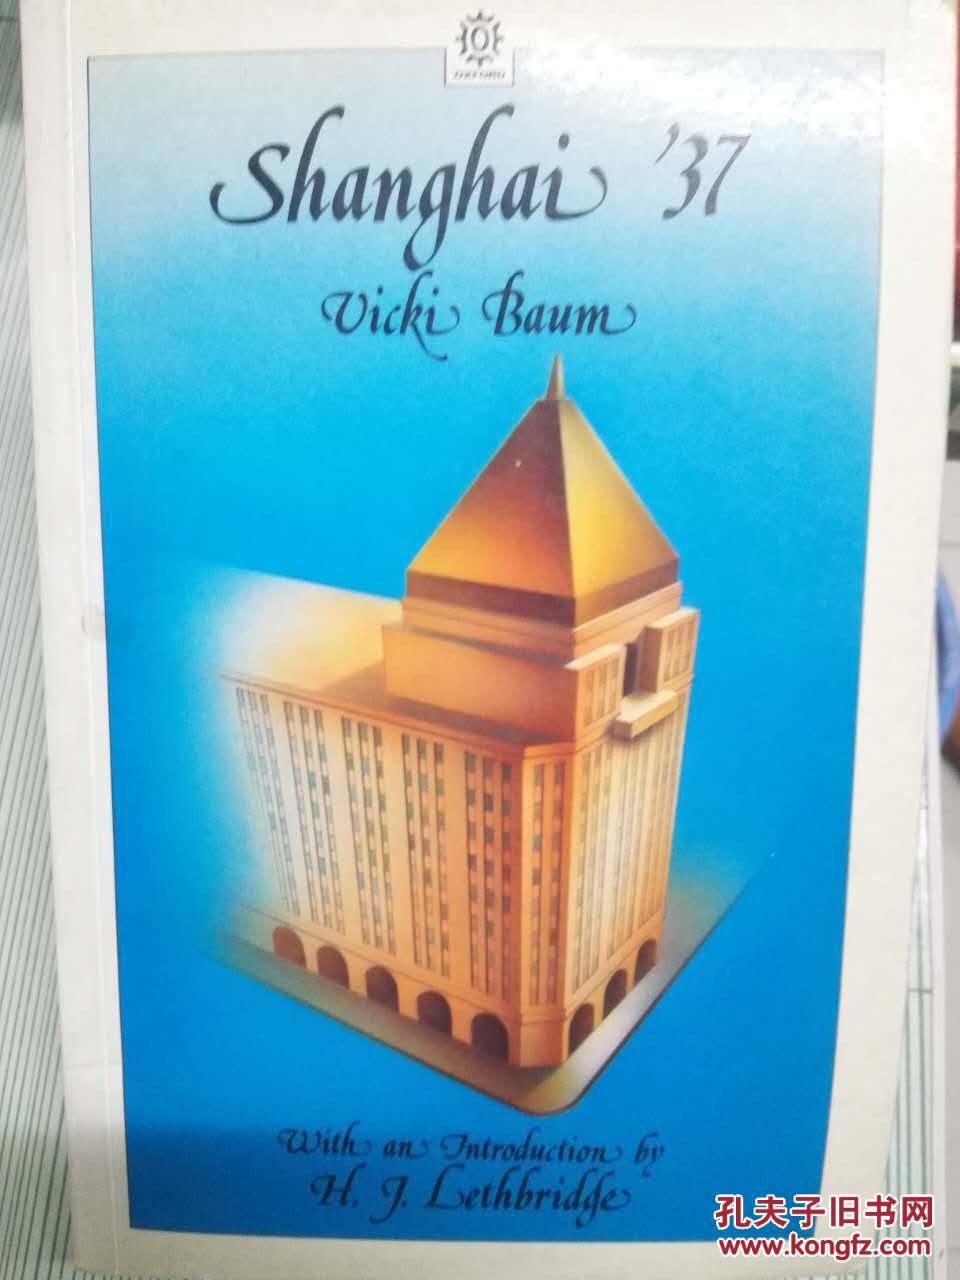 Shanghai '37